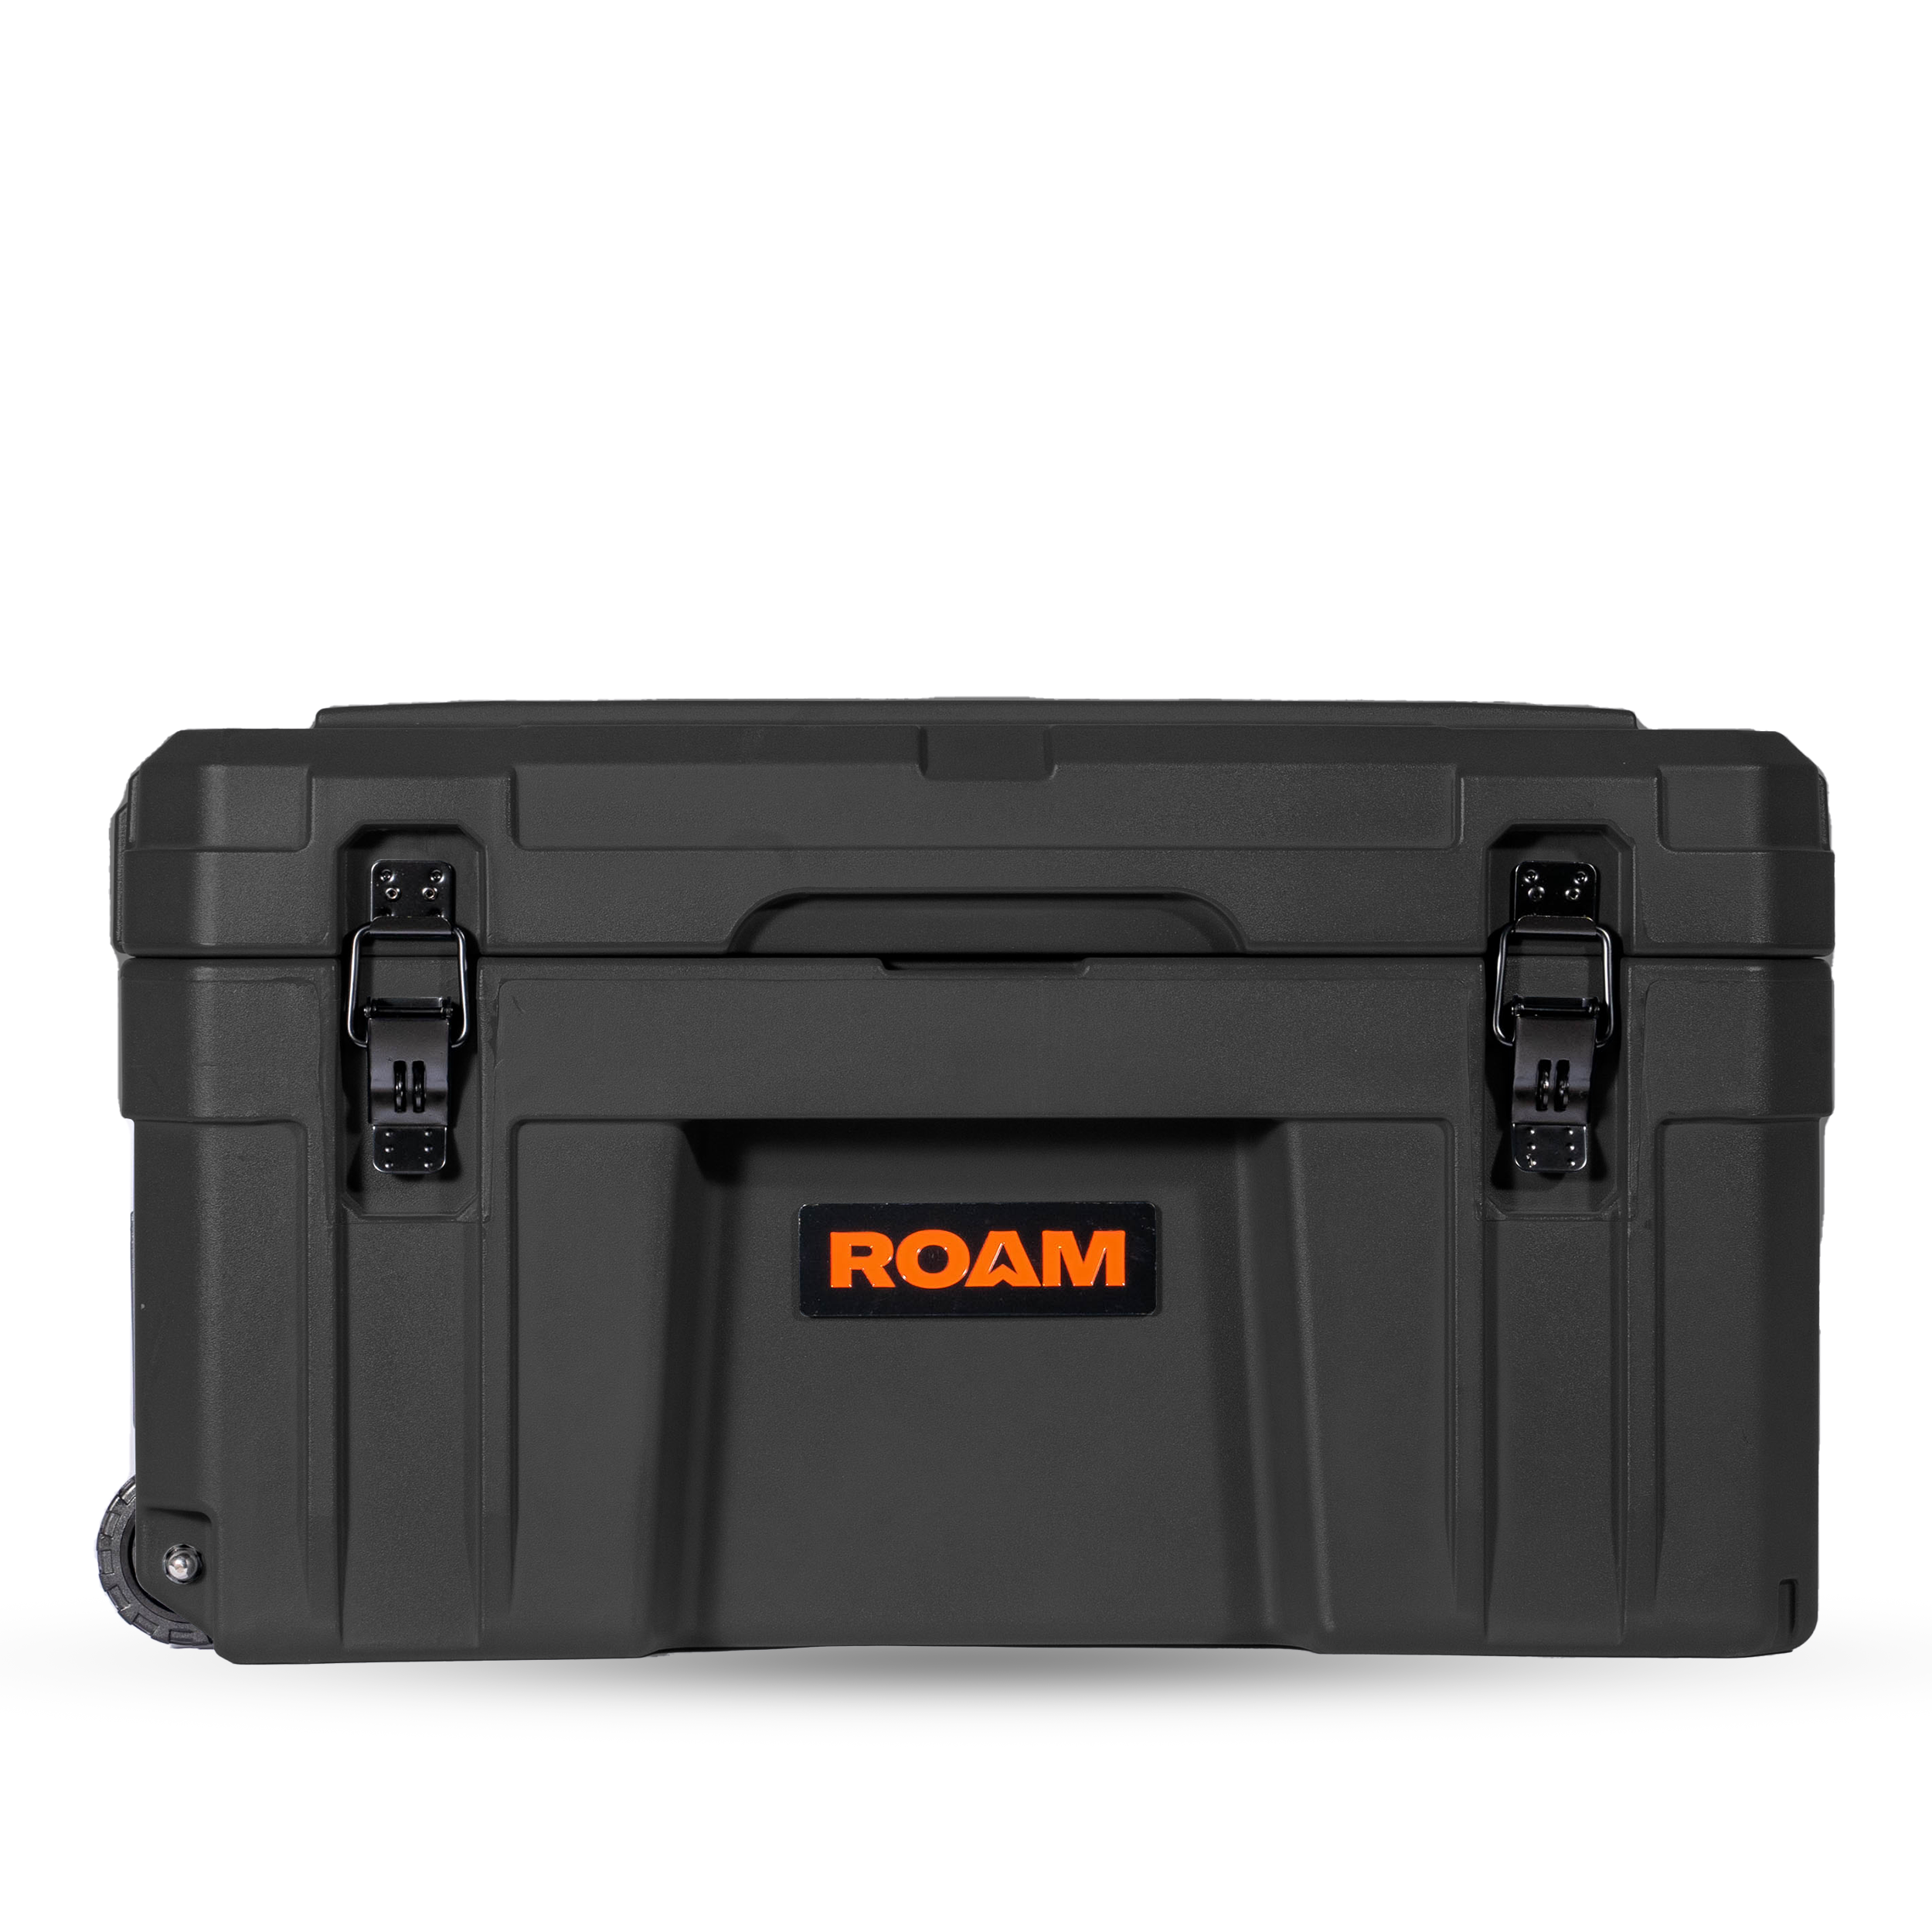 ROAM 80L Rolling Rugged Case